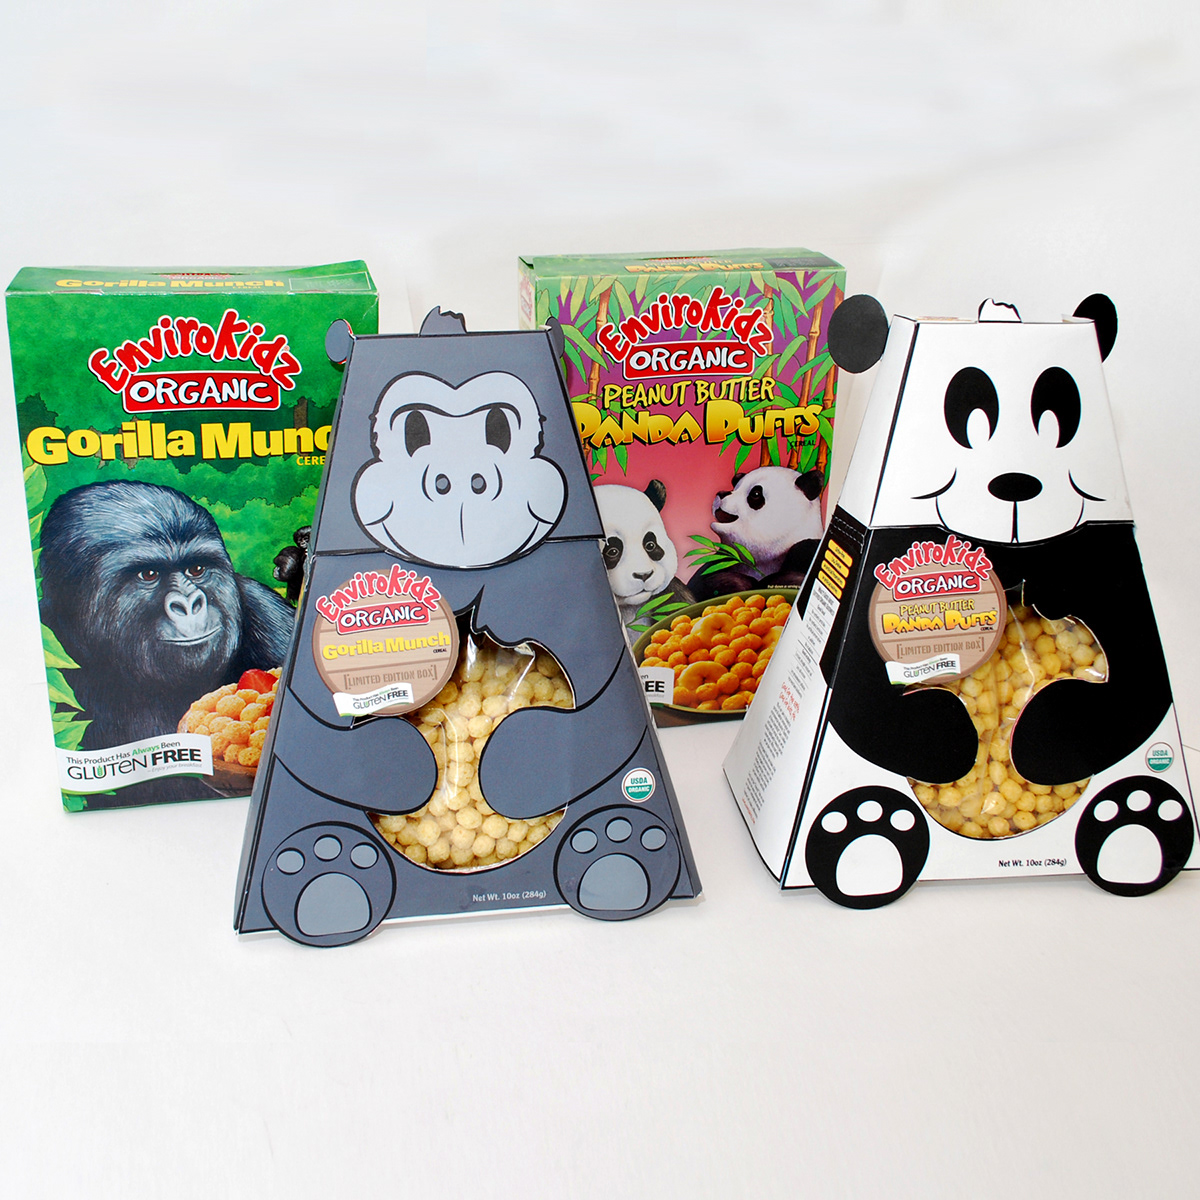 envirokidz organic Cereal box Panda  gorilla Fun jungle Display measure